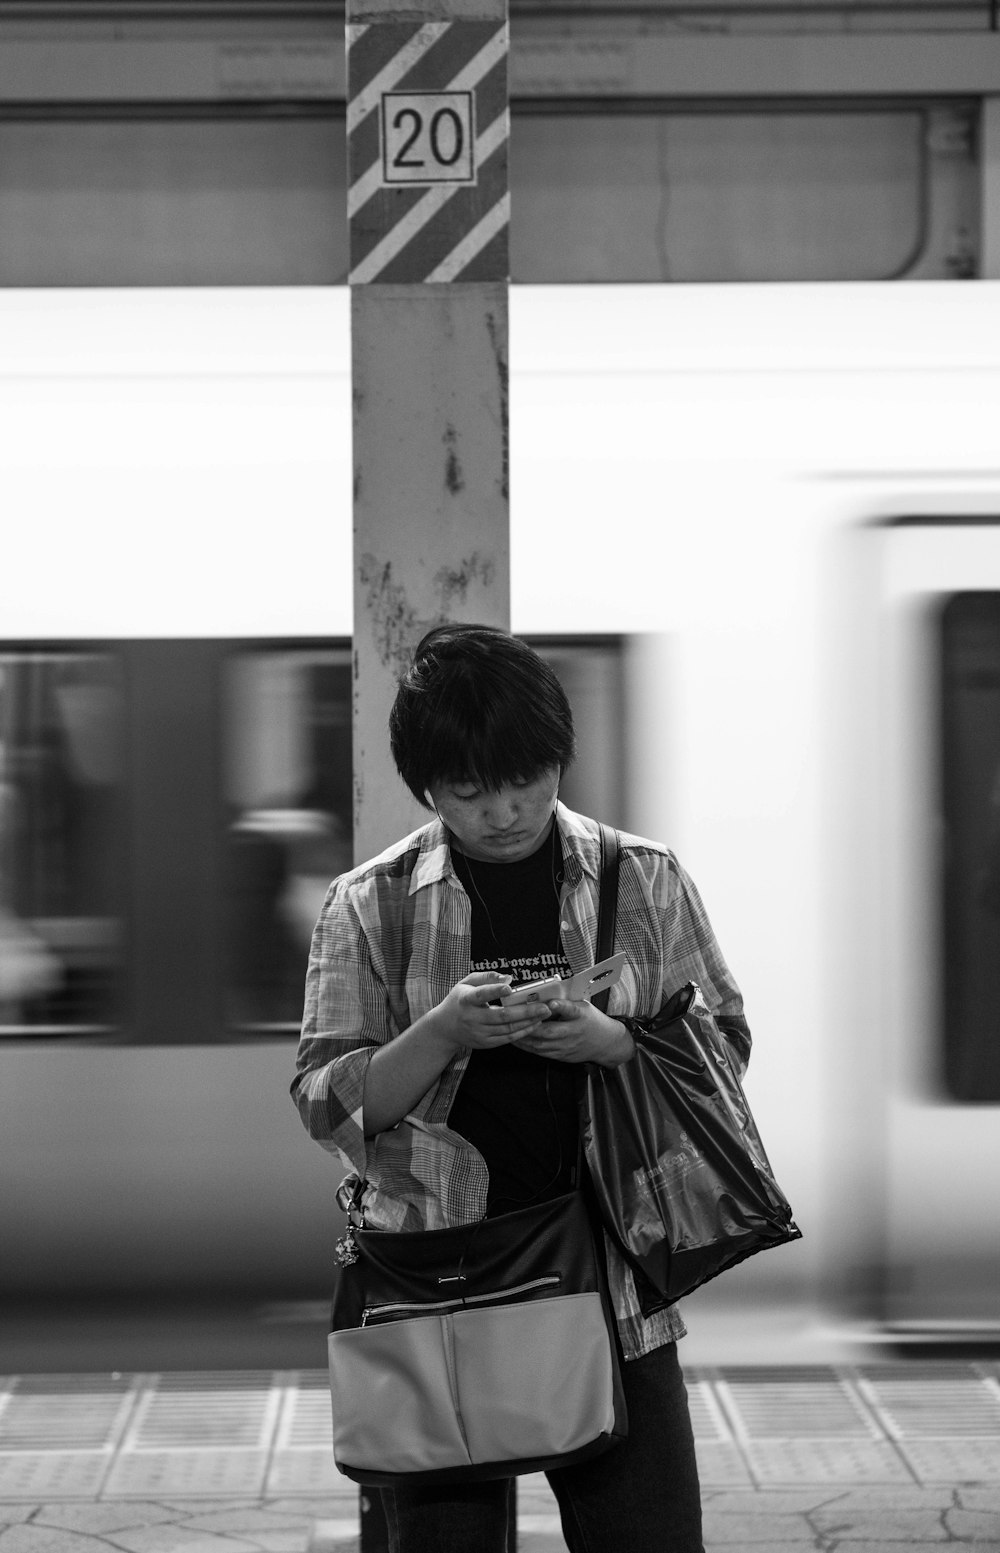 Photographie en niveaux de gris d’un homme utilisant un téléphone debout